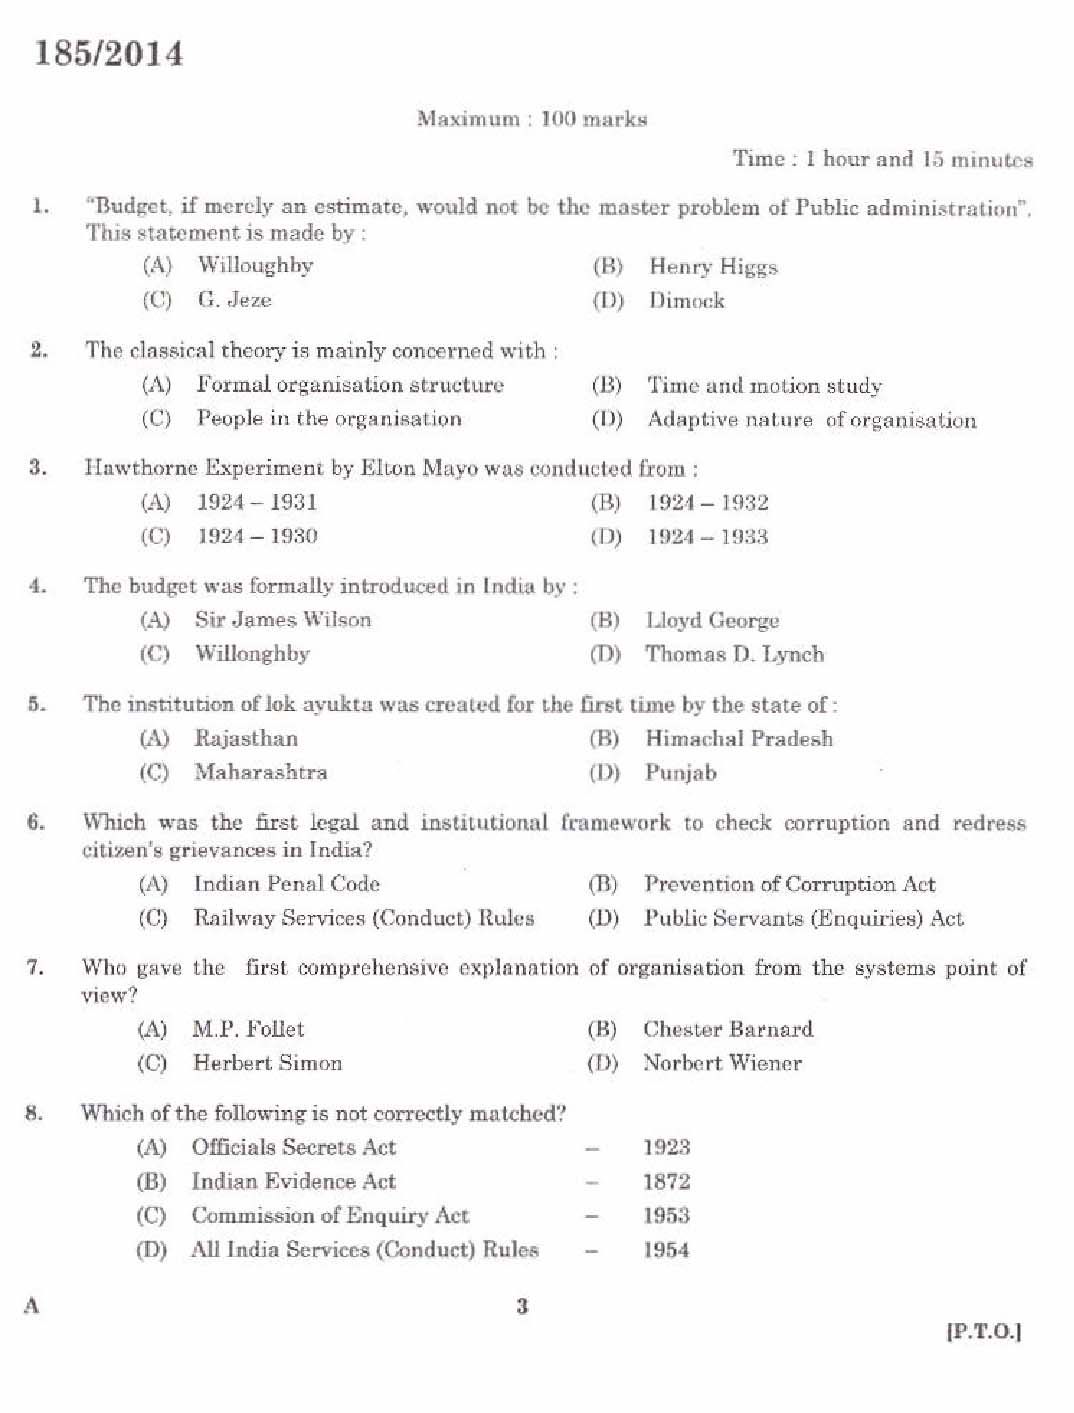 KPSC Lecturer in Public Administration Exam 1852014 1